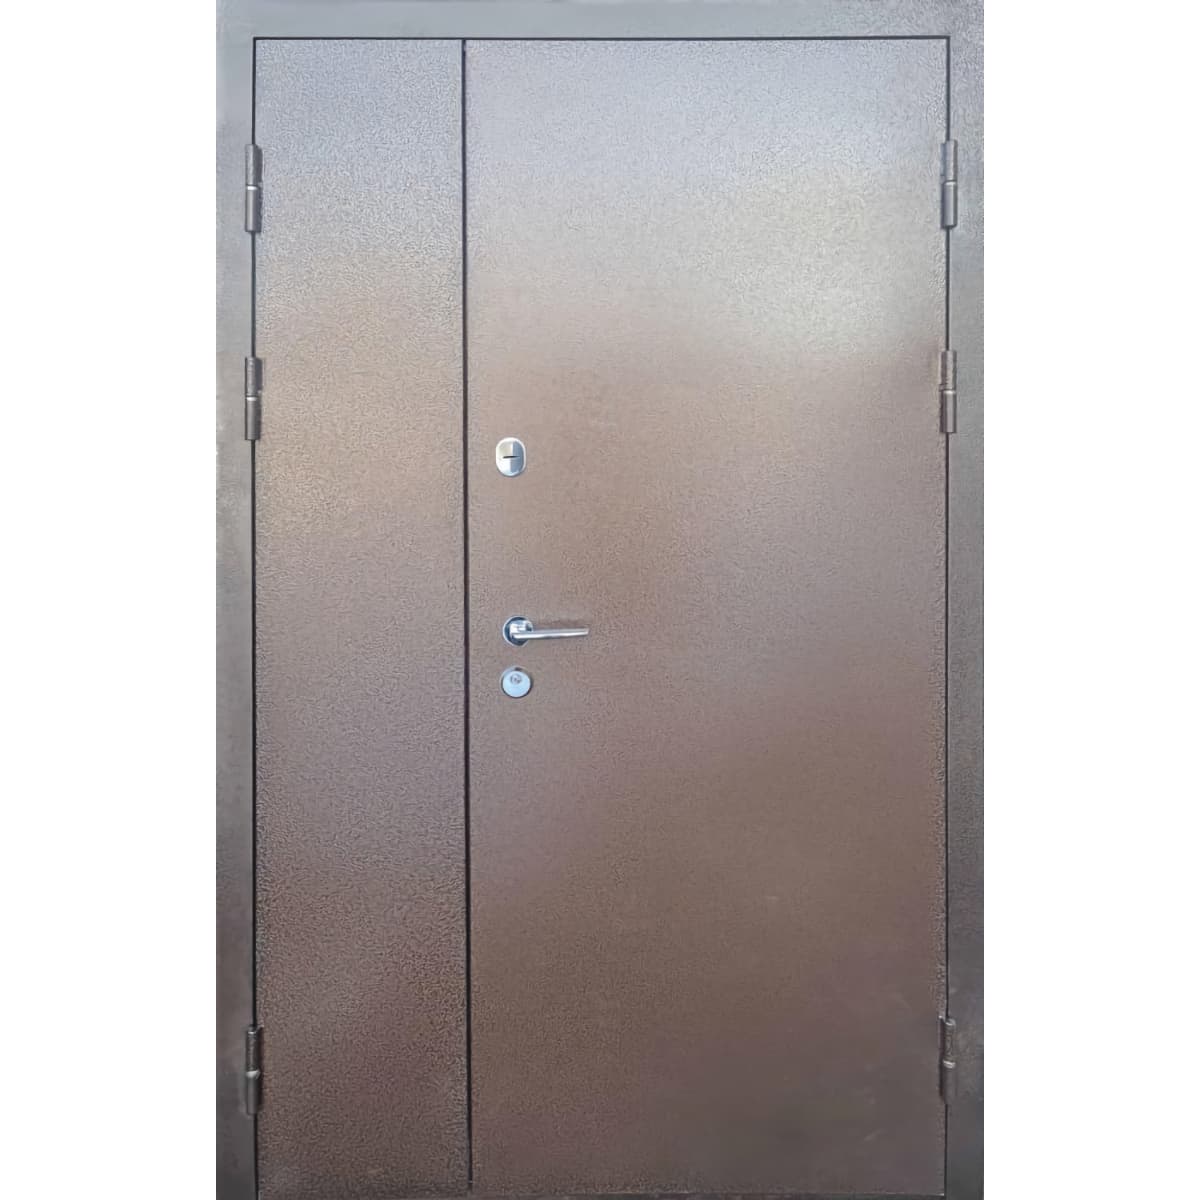 Дверь металлическая: профессиональная установка и гарантия качества - Стандарт Металл/МДФ Классик 1200